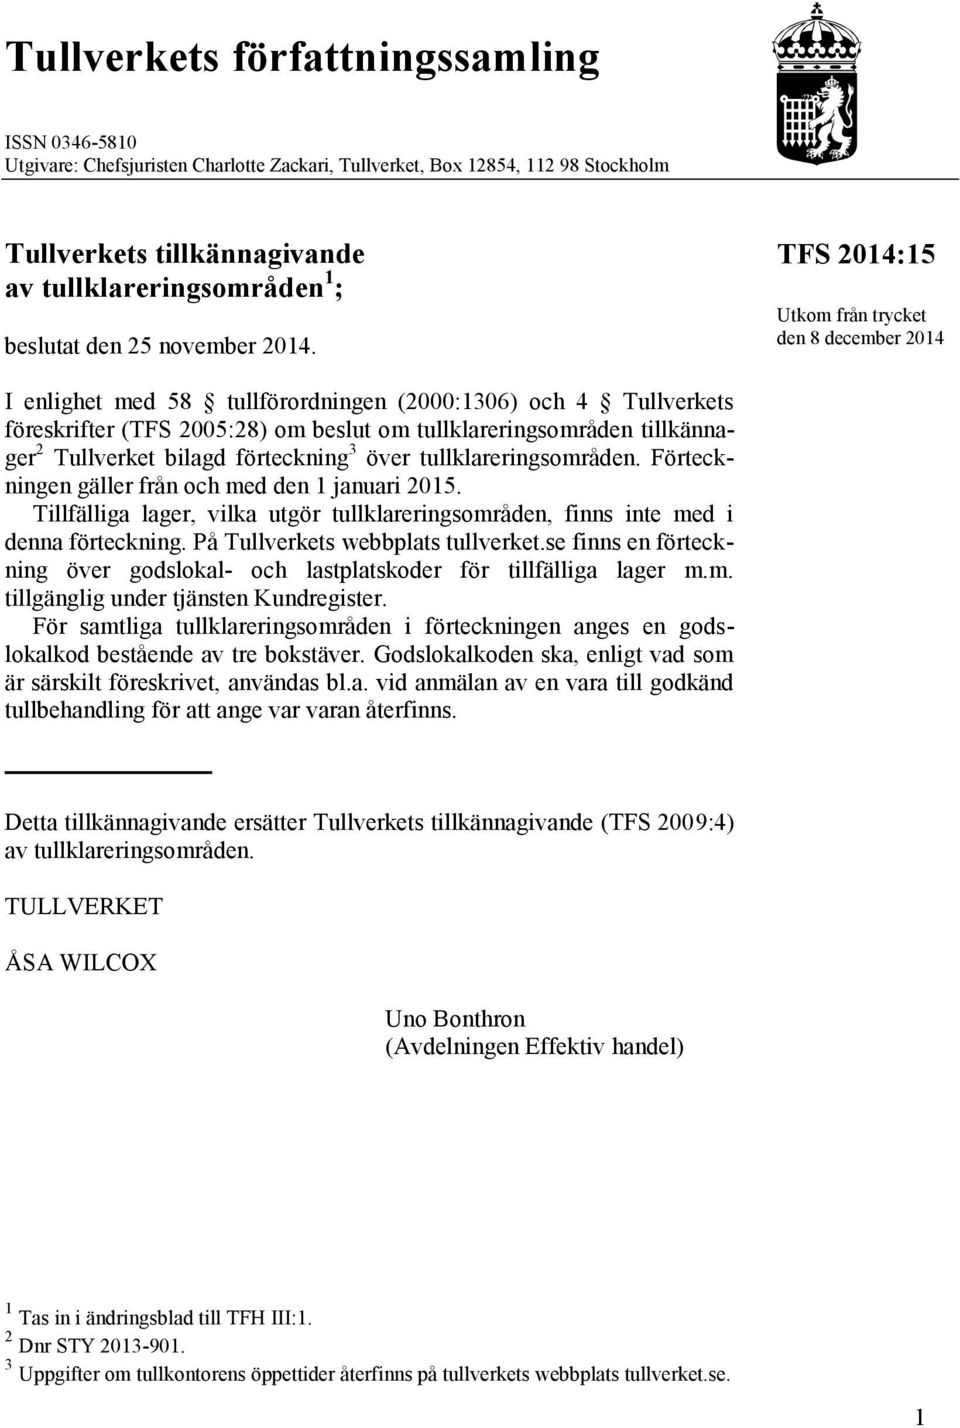 TFS 2014:1 Utkom från trycket den 8 december 2014 I enlighet med 8 tullförordningen (2000:1306) och 4 Tullverkets föreskrifter (TFS 200:28) om beslut om tullklareringsområden tillkännager 2